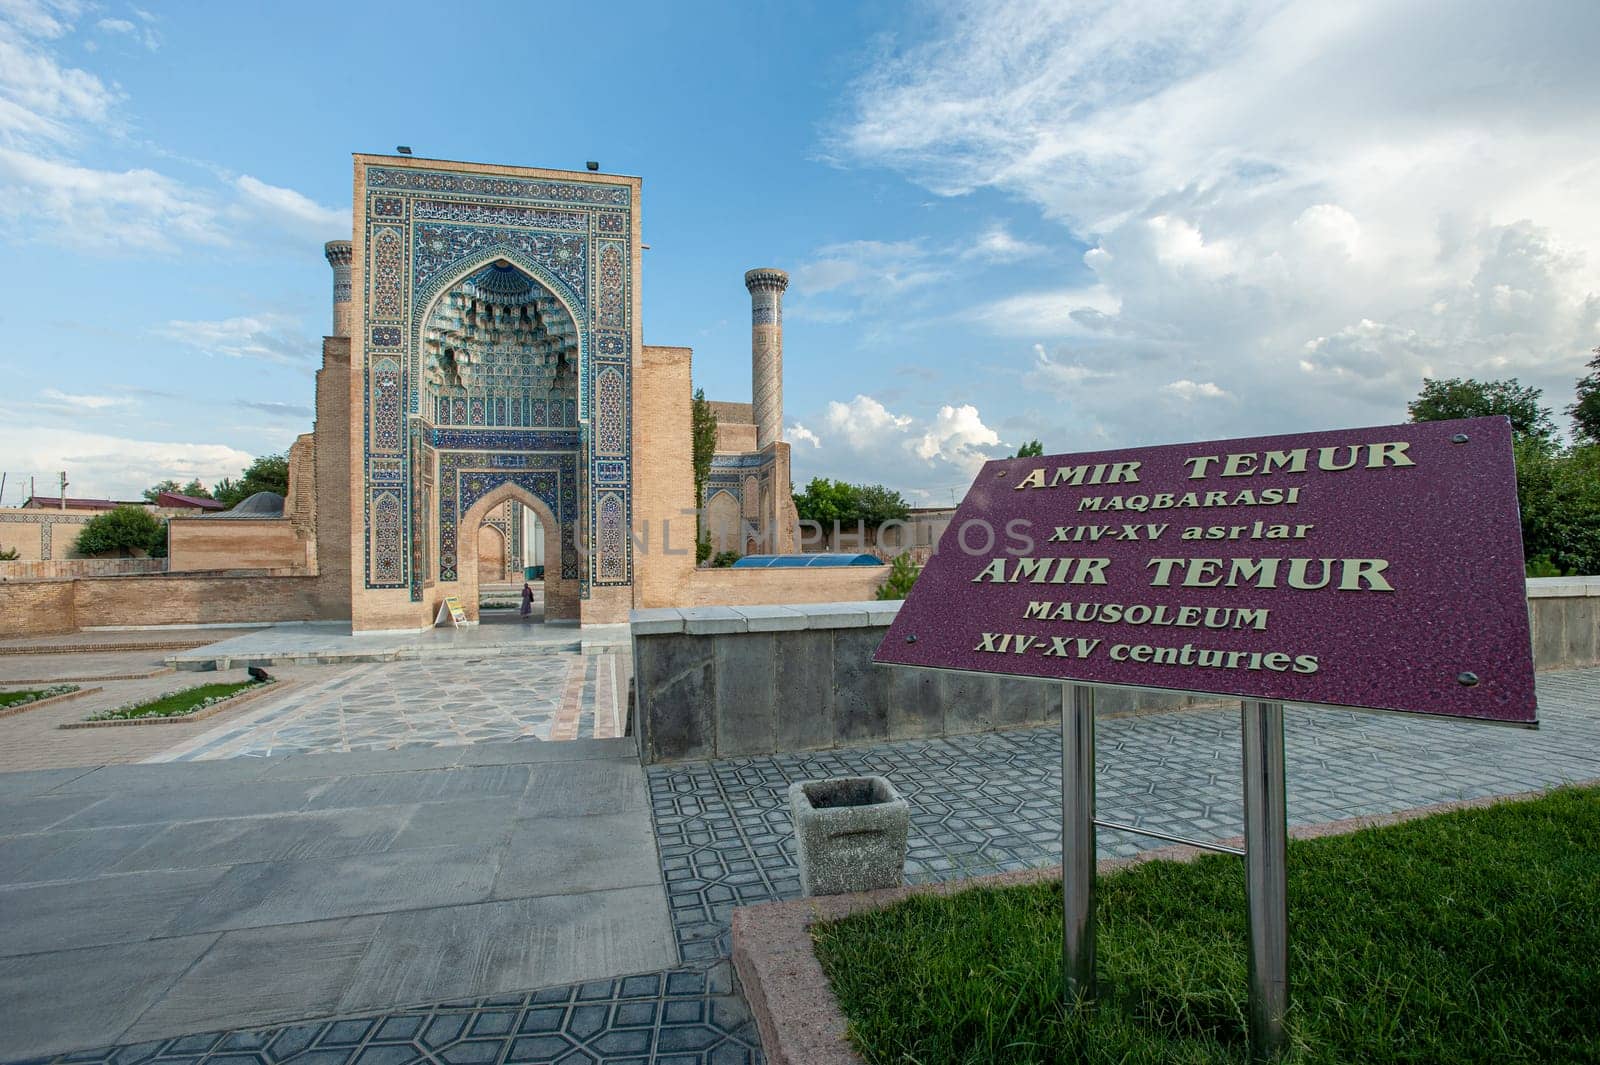 The mausoleum of Amir Timur in Samarkand, Uzbekistan by A_Karim